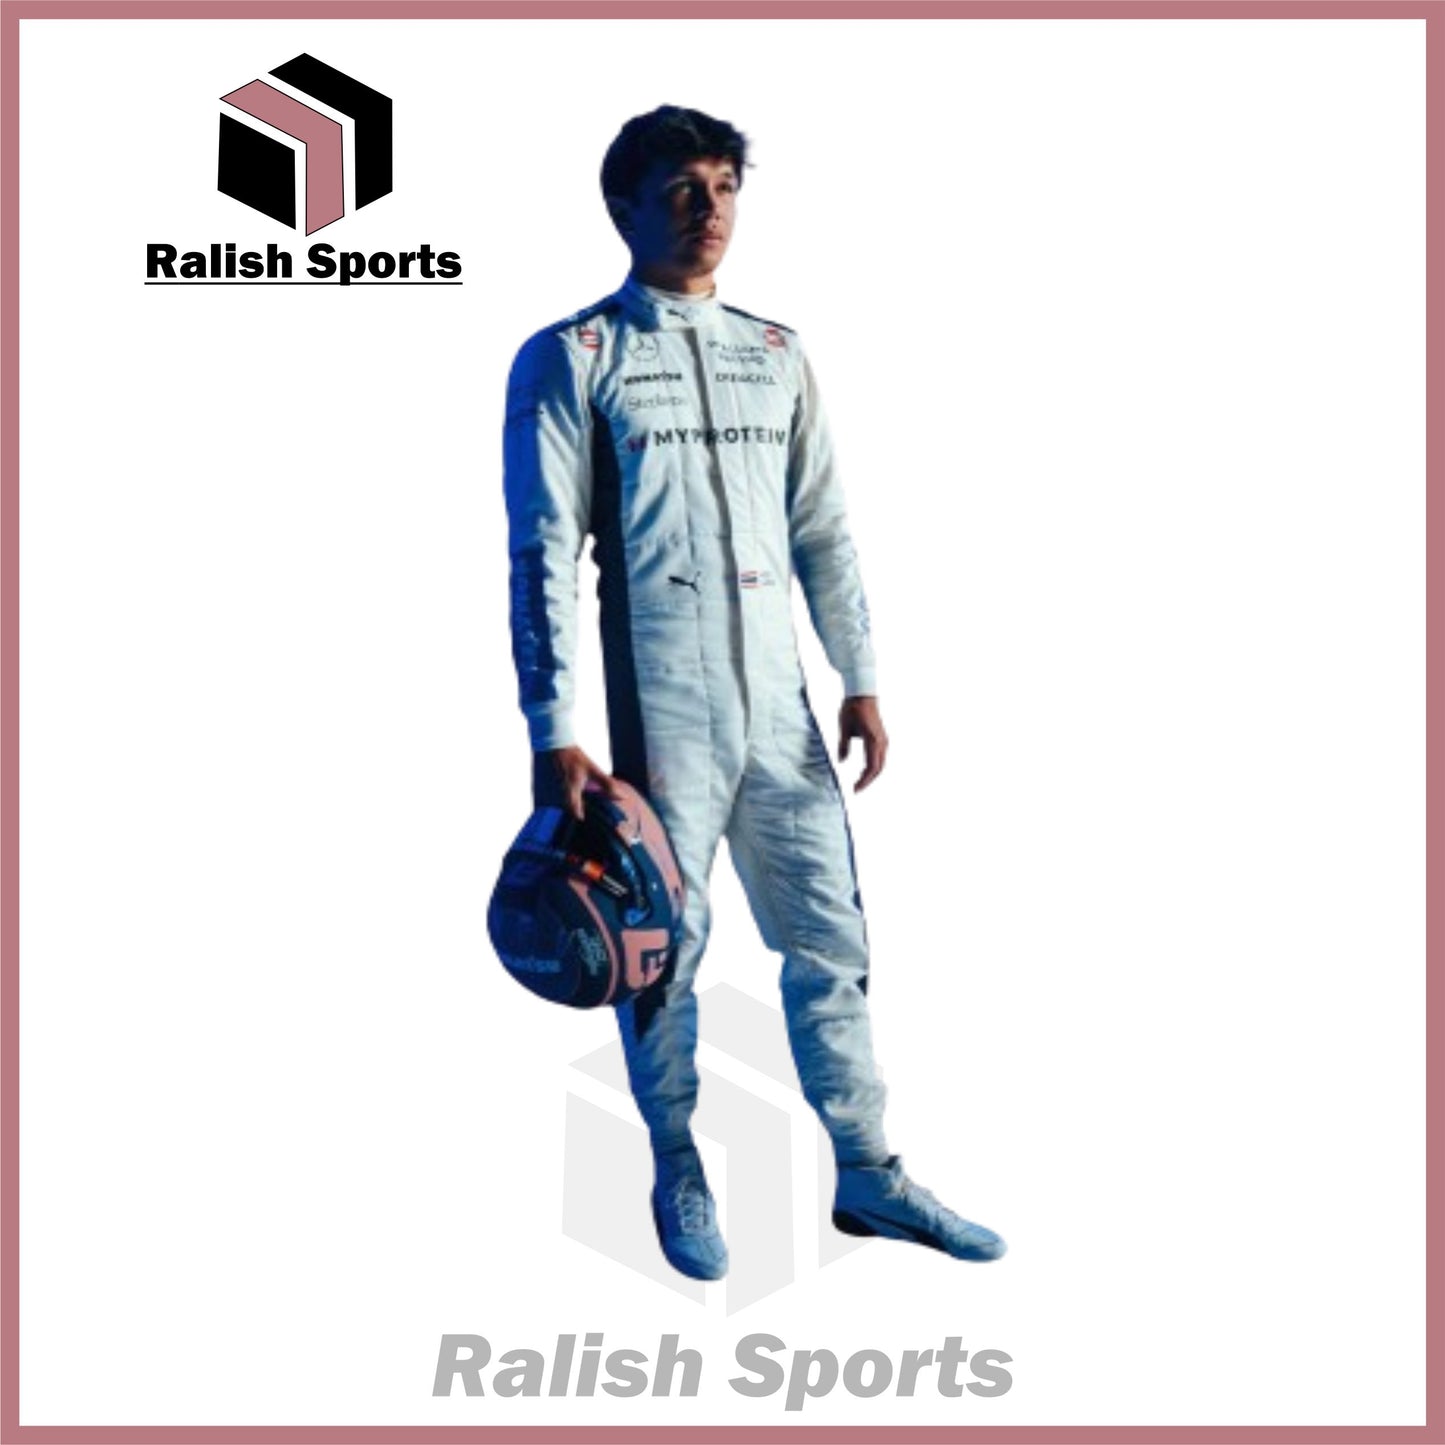 2024 Alex Albon Williams F1 Team Race Suit